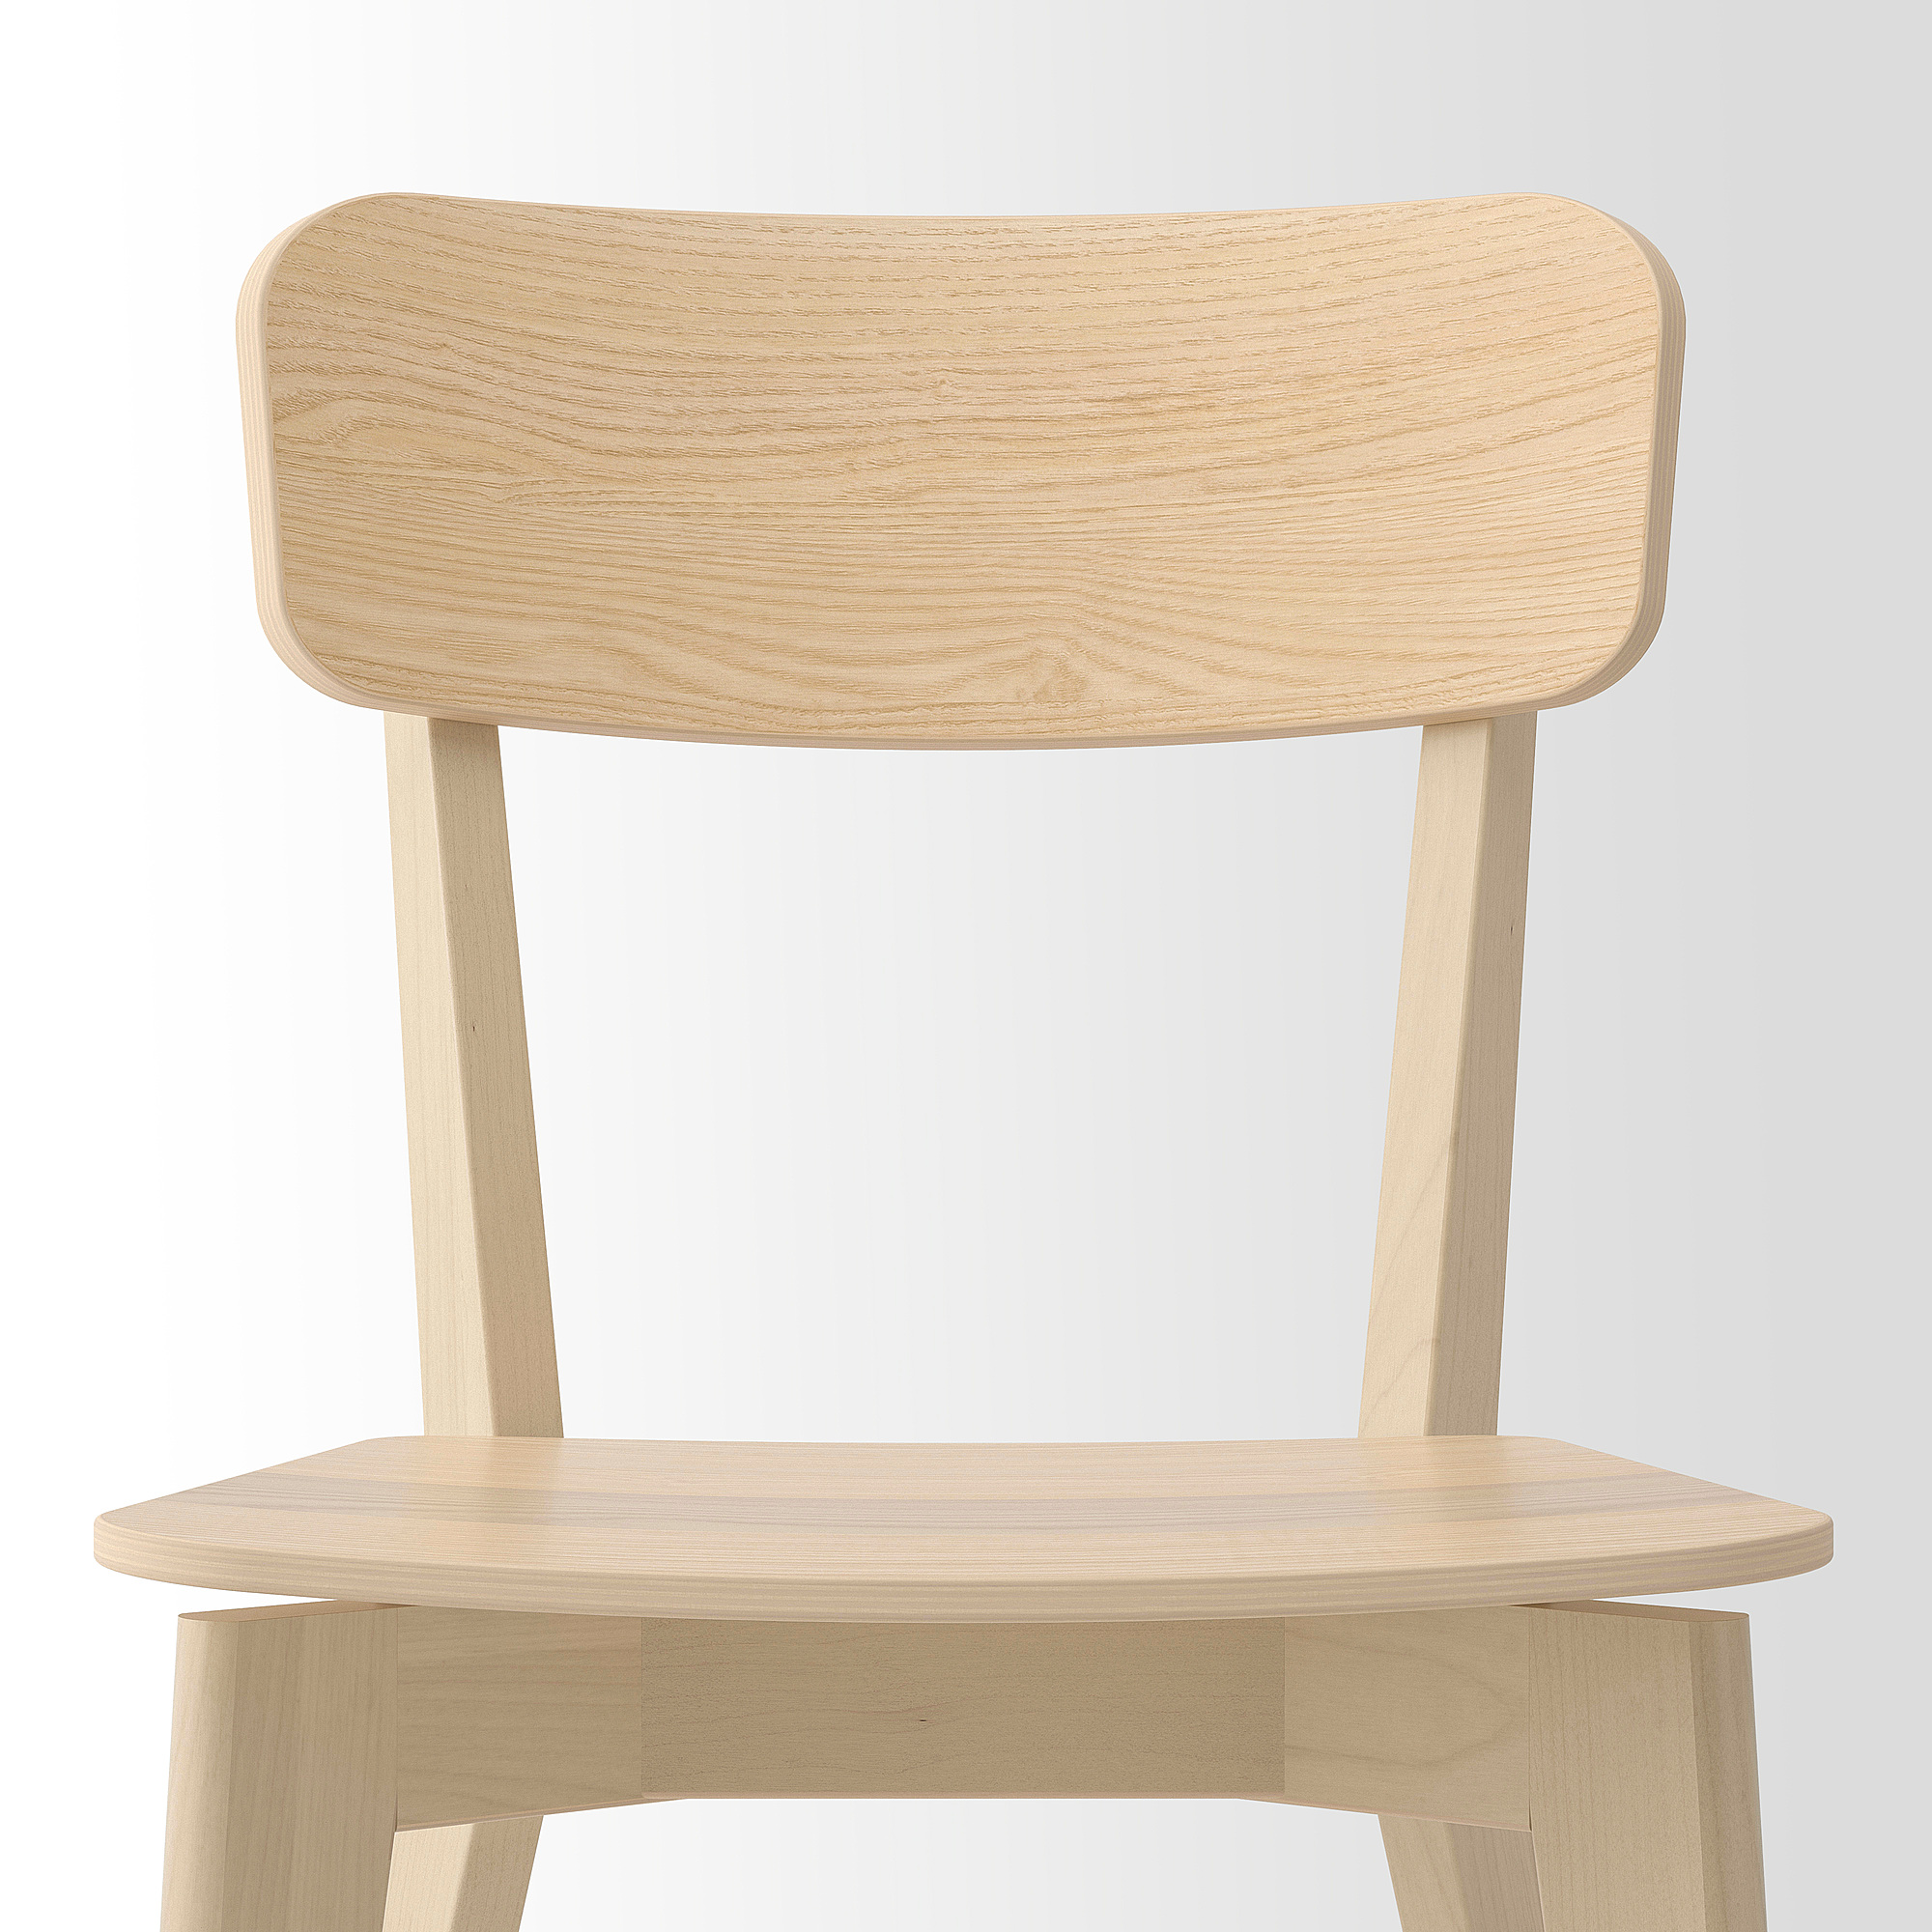 LISABO/LISABO table and 4 chairs